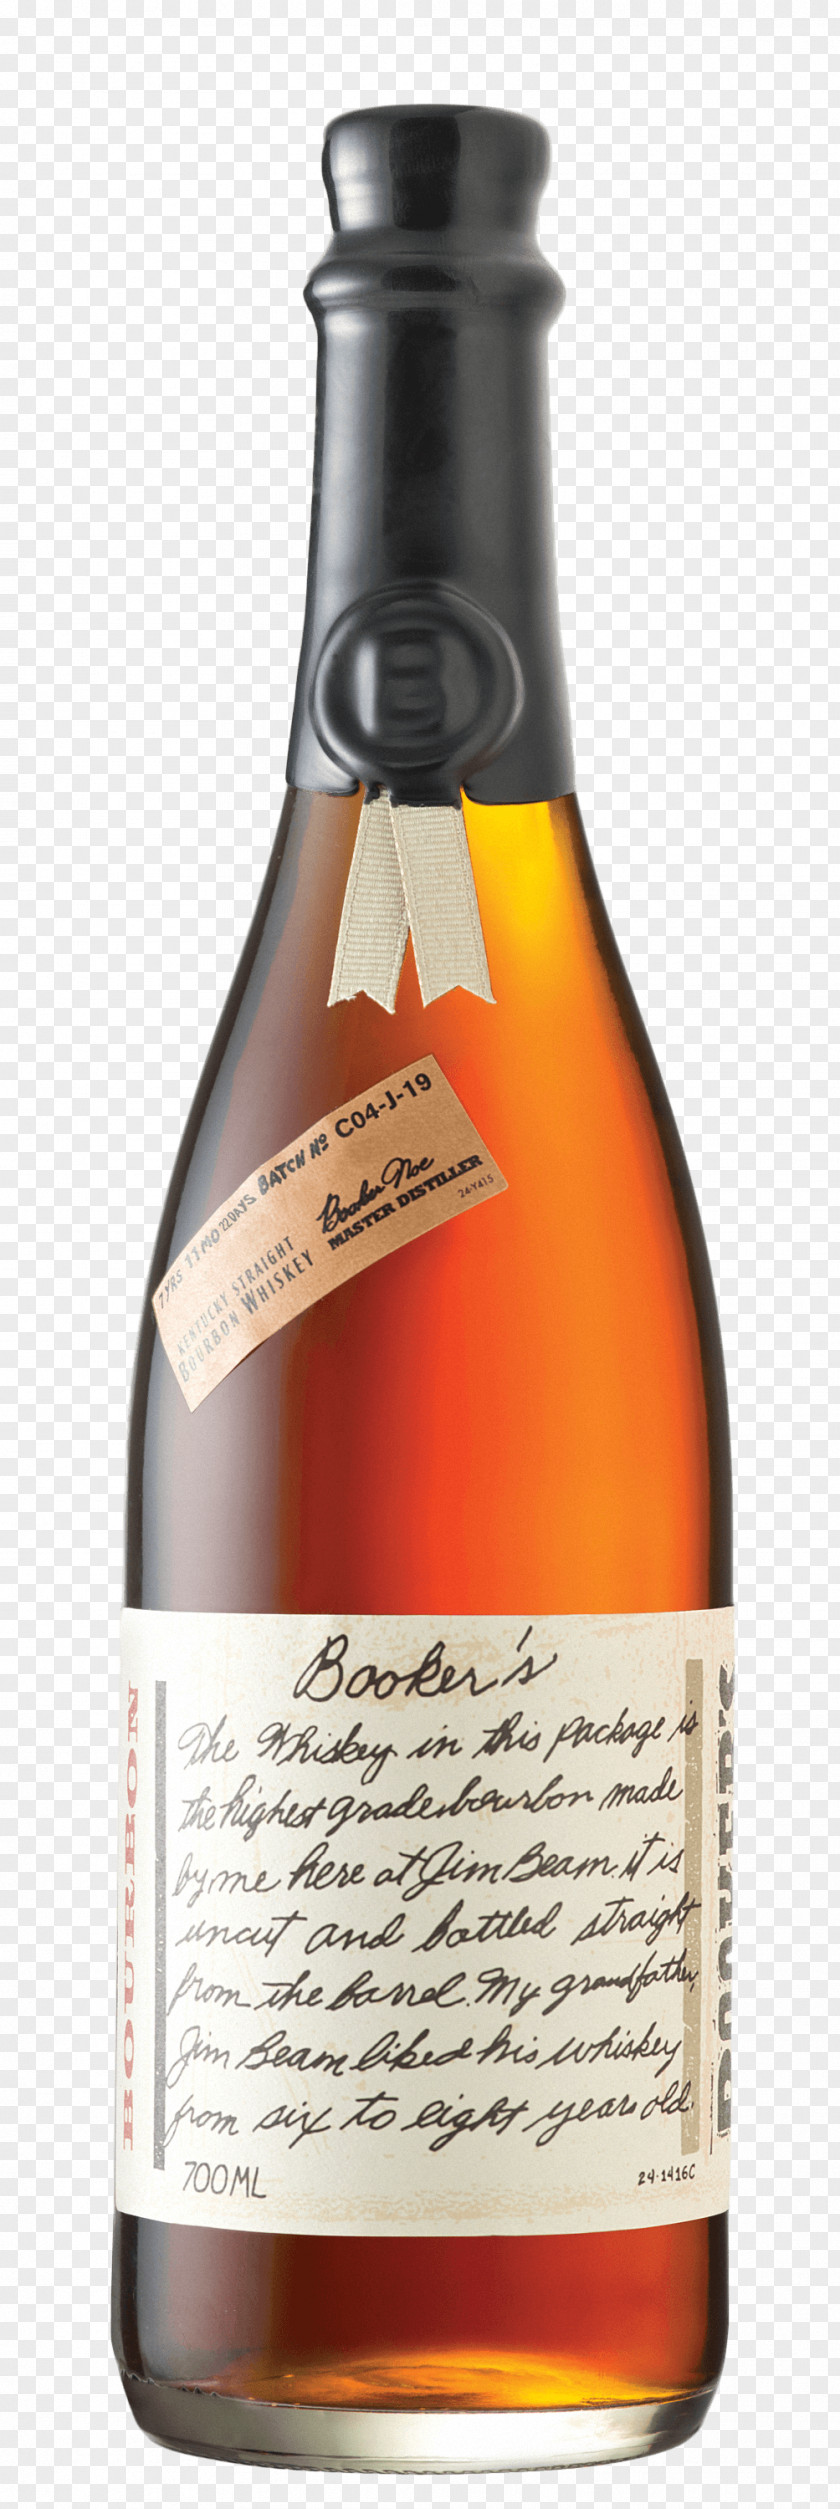 Drink Booker's Bourbon Whiskey Basil Hayden's Distilled Beverage PNG